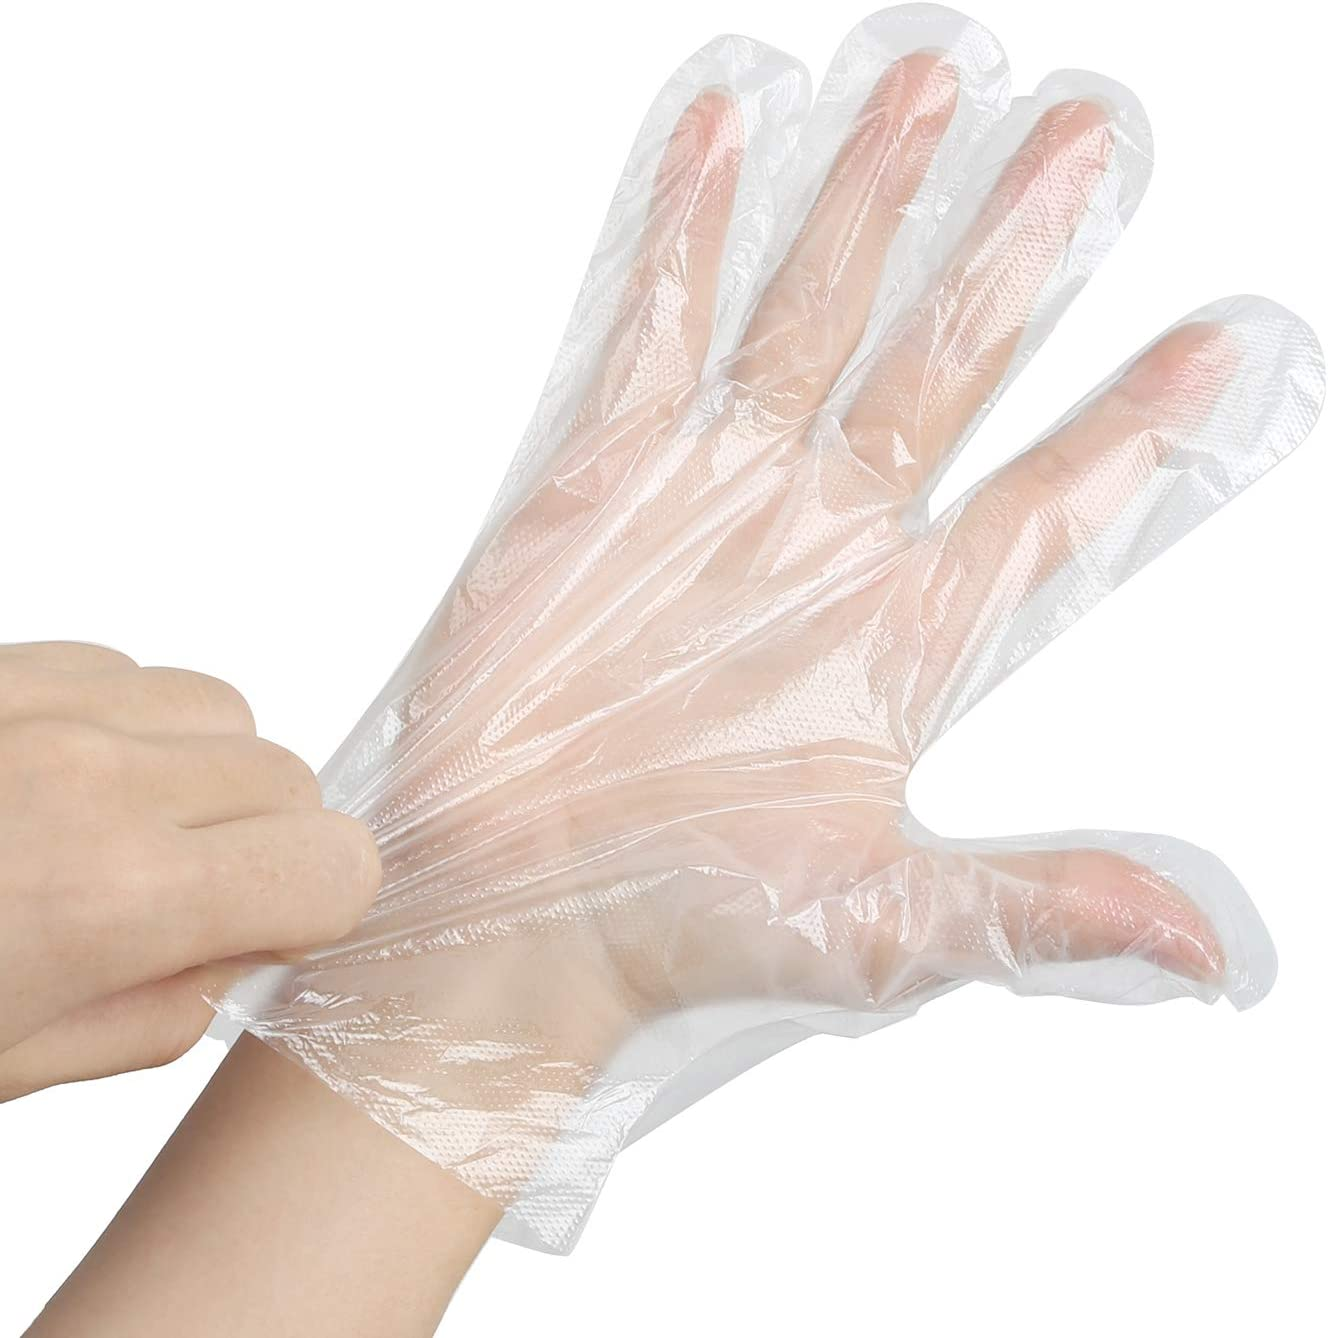 Medical Gloves 2021